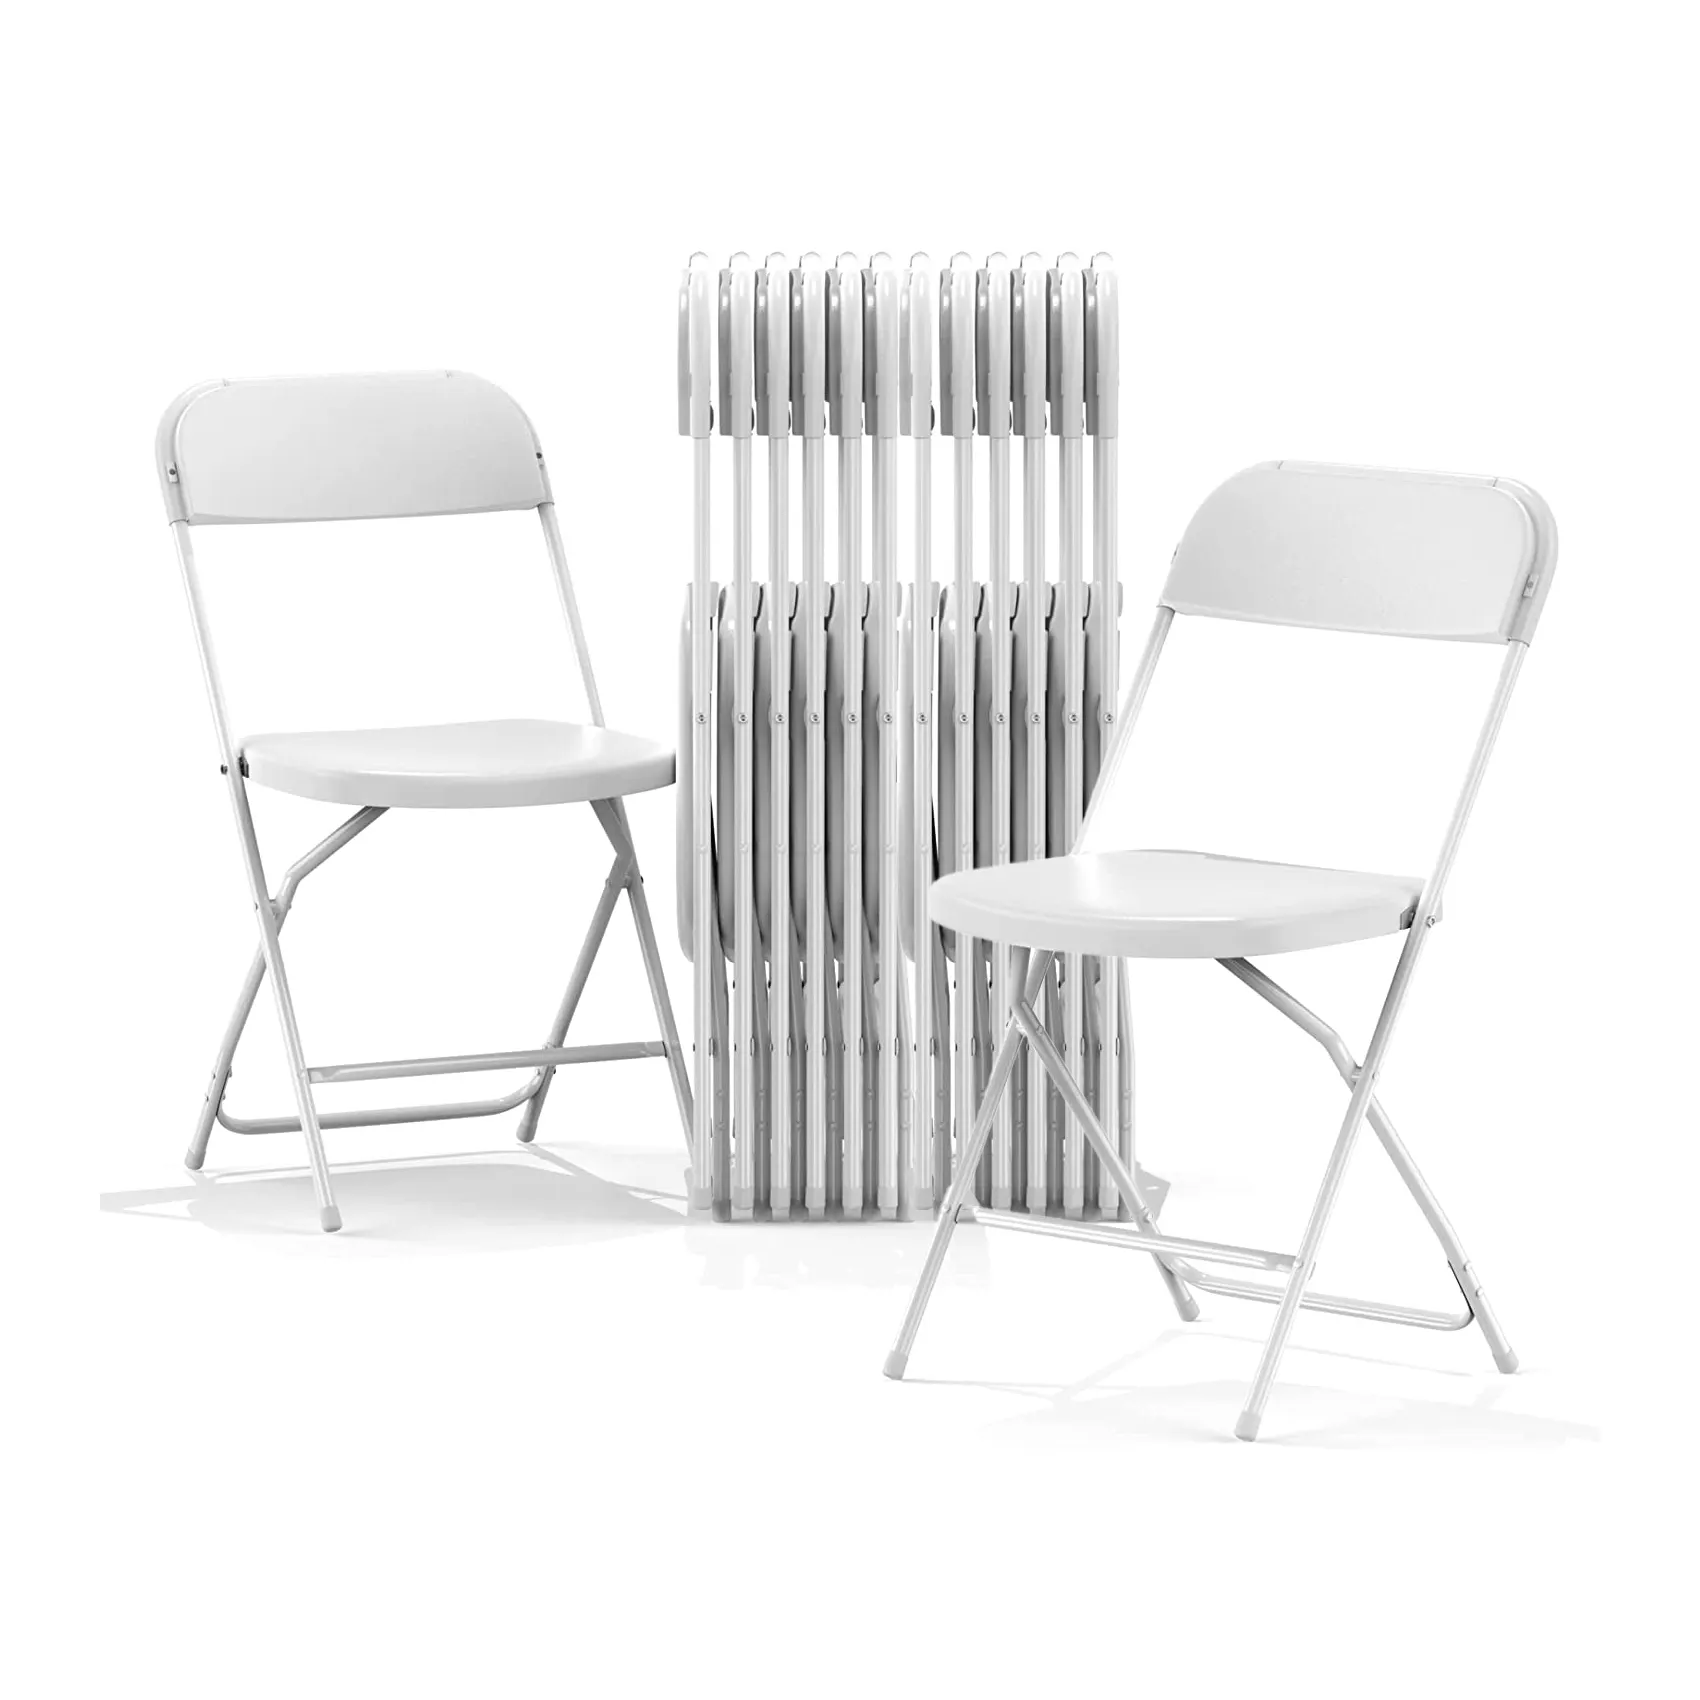 Silla plegable de plástico blanco de alta calidad, fácil almacenamiento y transporte, sillas de comedor para restaurante al aire libre